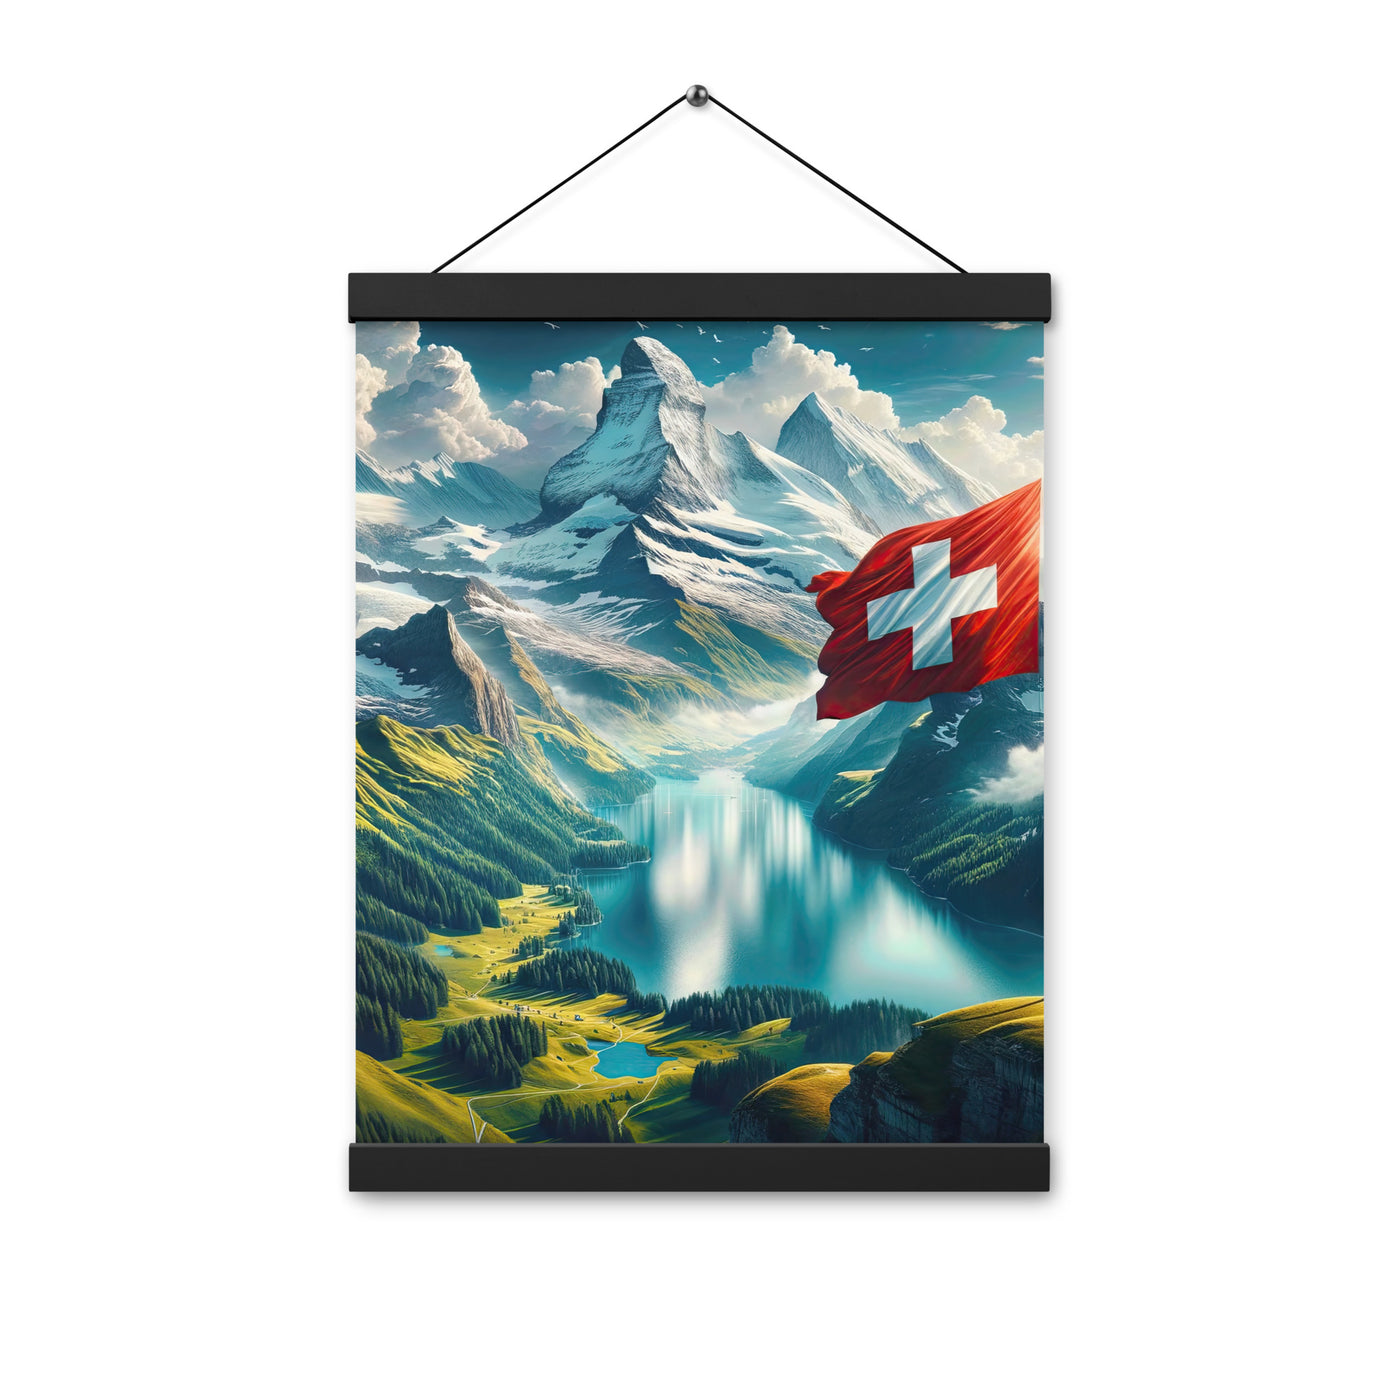 Ultraepische, fotorealistische Darstellung der Schweizer Alpenlandschaft mit Schweizer Flagge - Enhanced Matte Paper Poster With Hanger berge xxx yyy zzz 30.5 x 40.6 cm